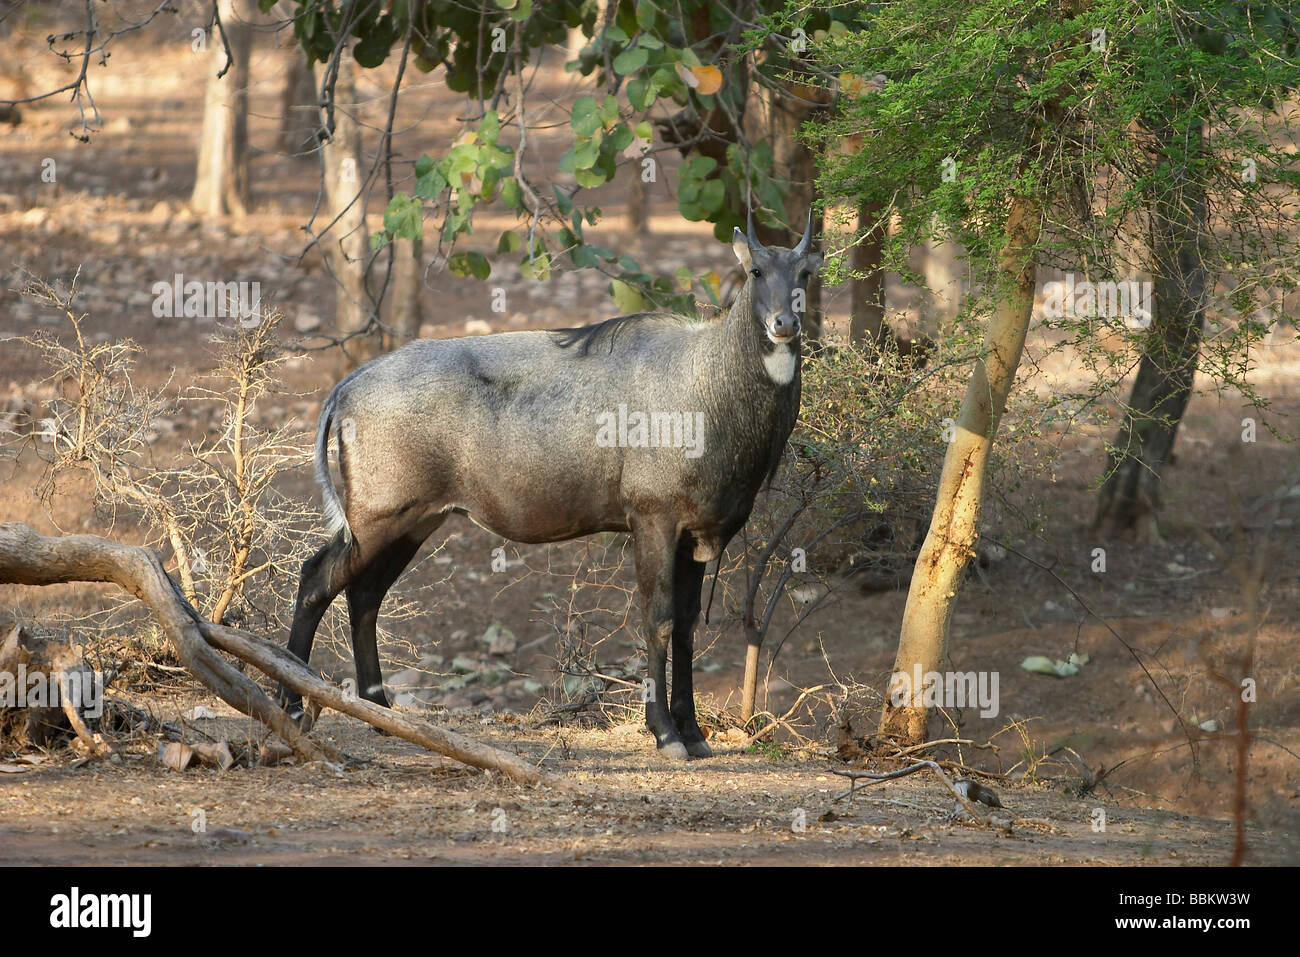 (Boselaphus tragocamelus le Nilgai) est une antilope qui est l'un des plus fréquemment les animaux sauvages du nord de l'Inde Banque D'Images